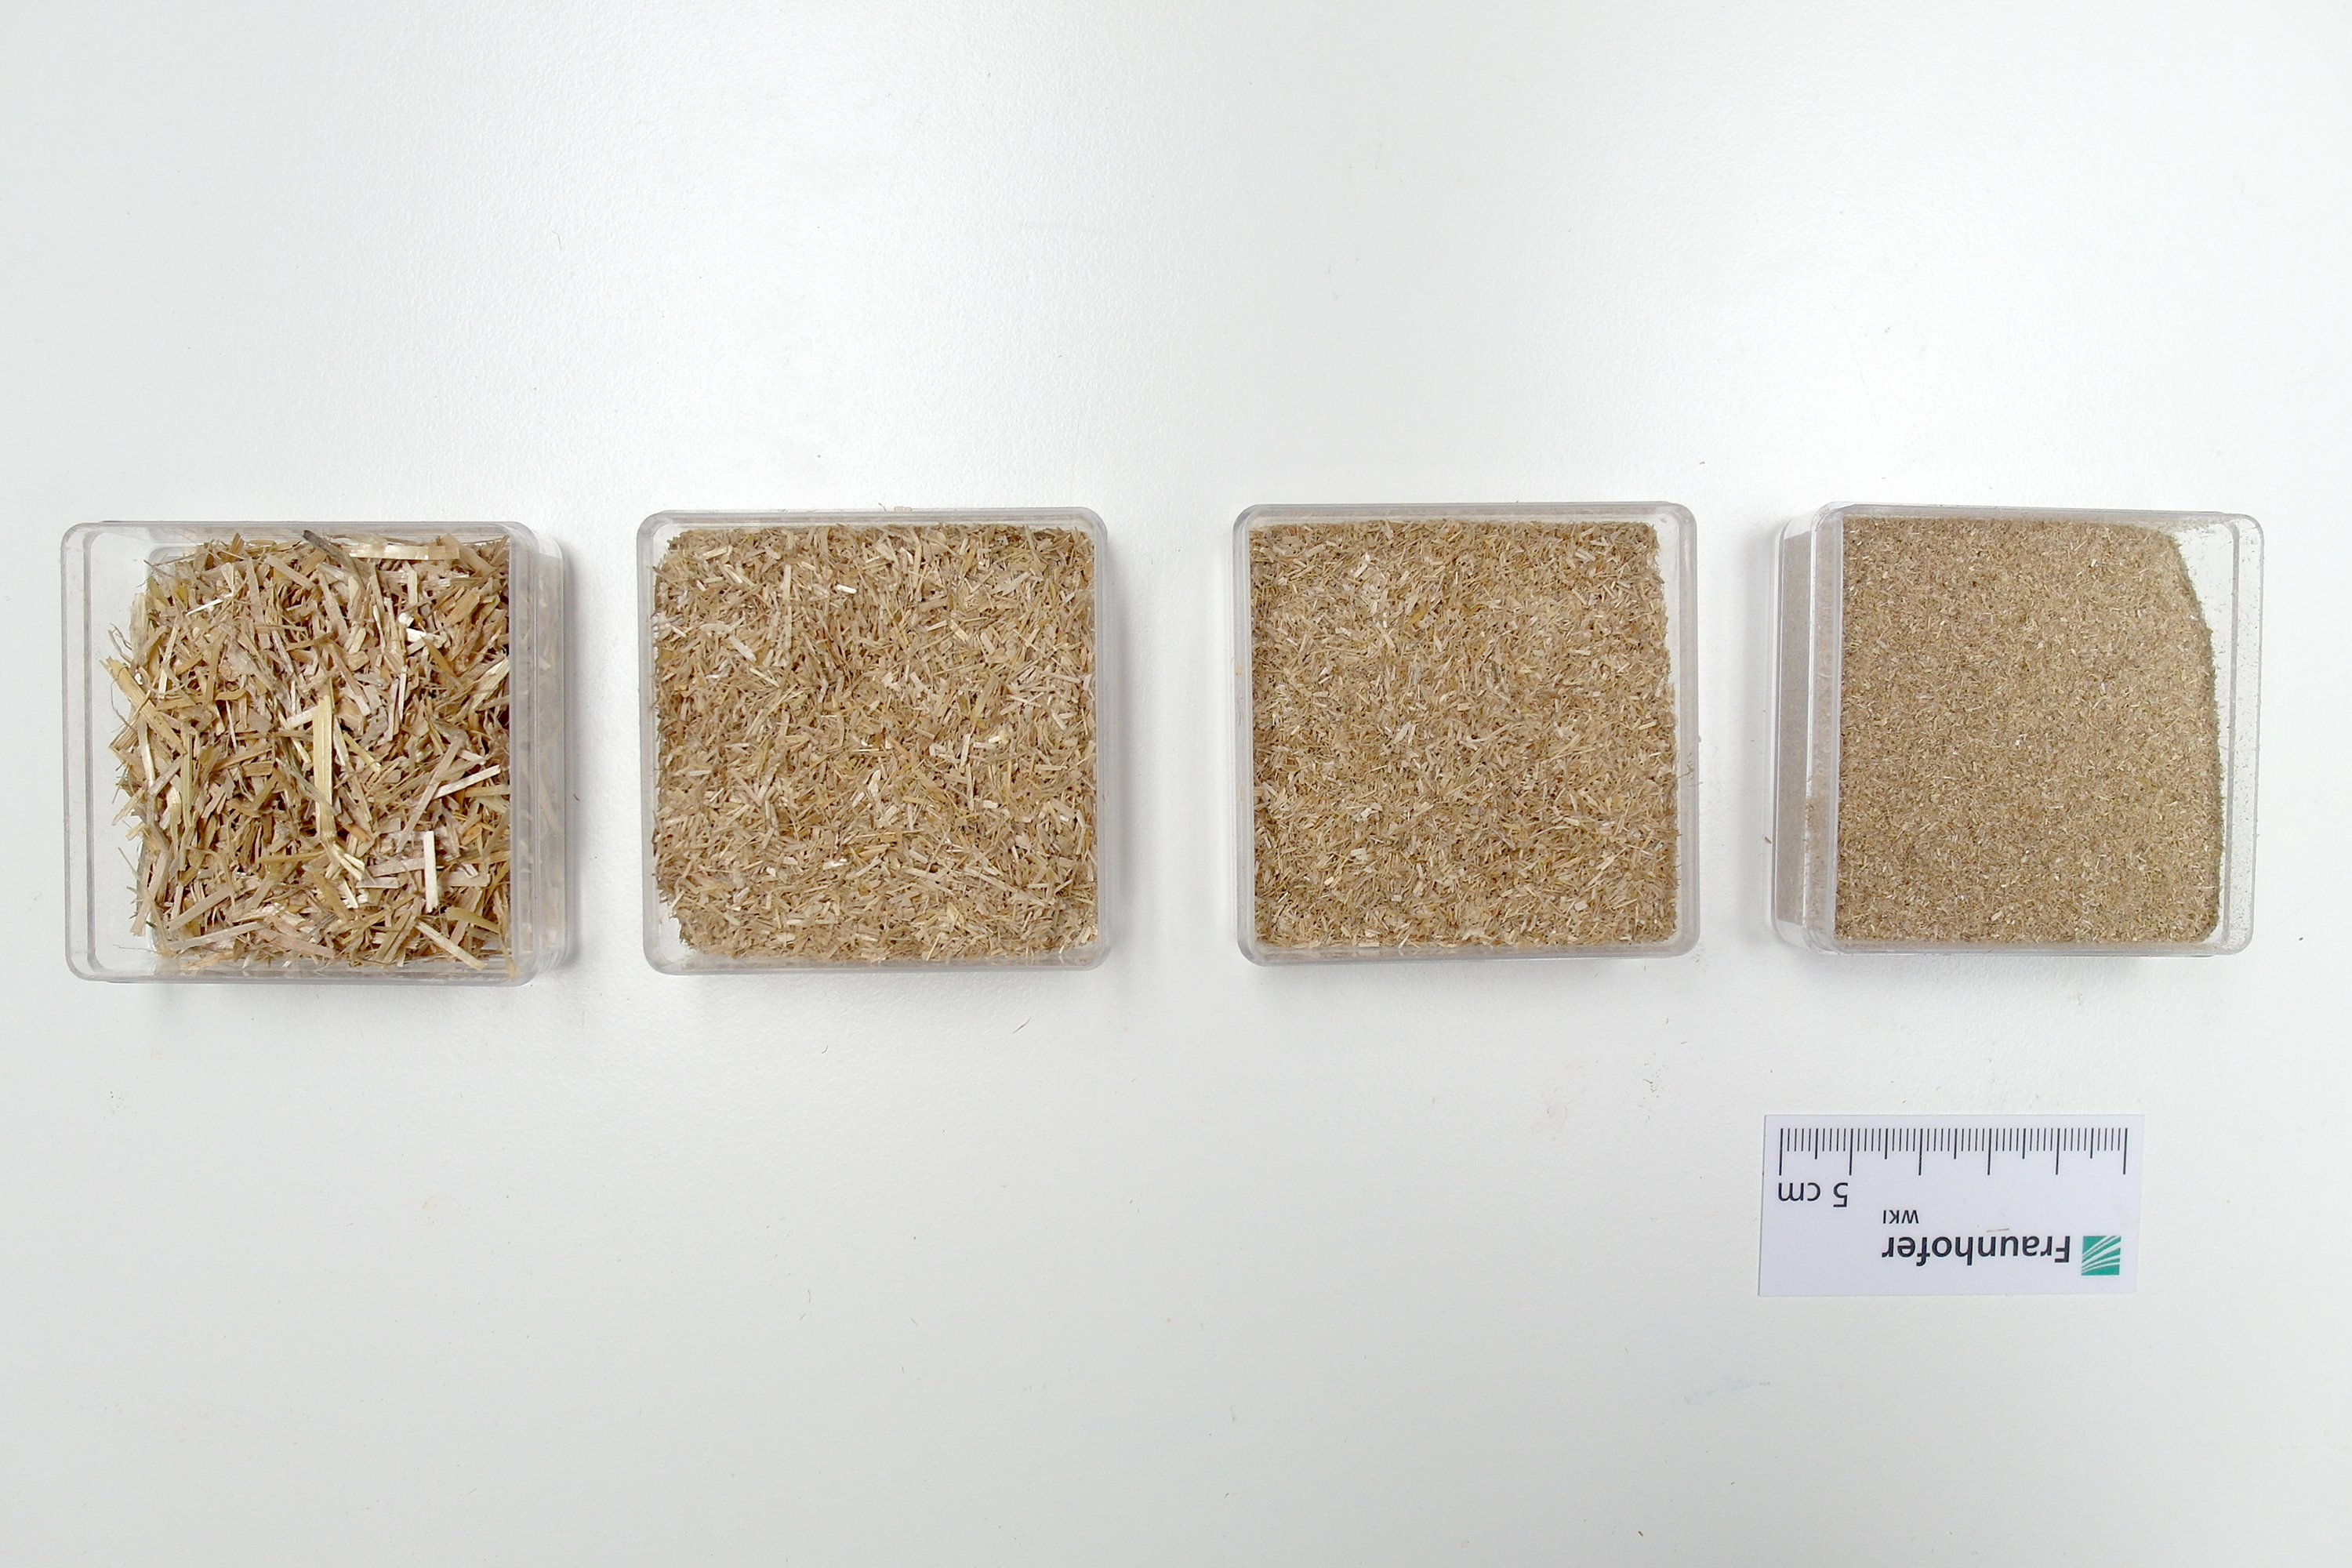 Vier Proben von Weizenstroh in verschiedenen Zerkleinerungsstufen